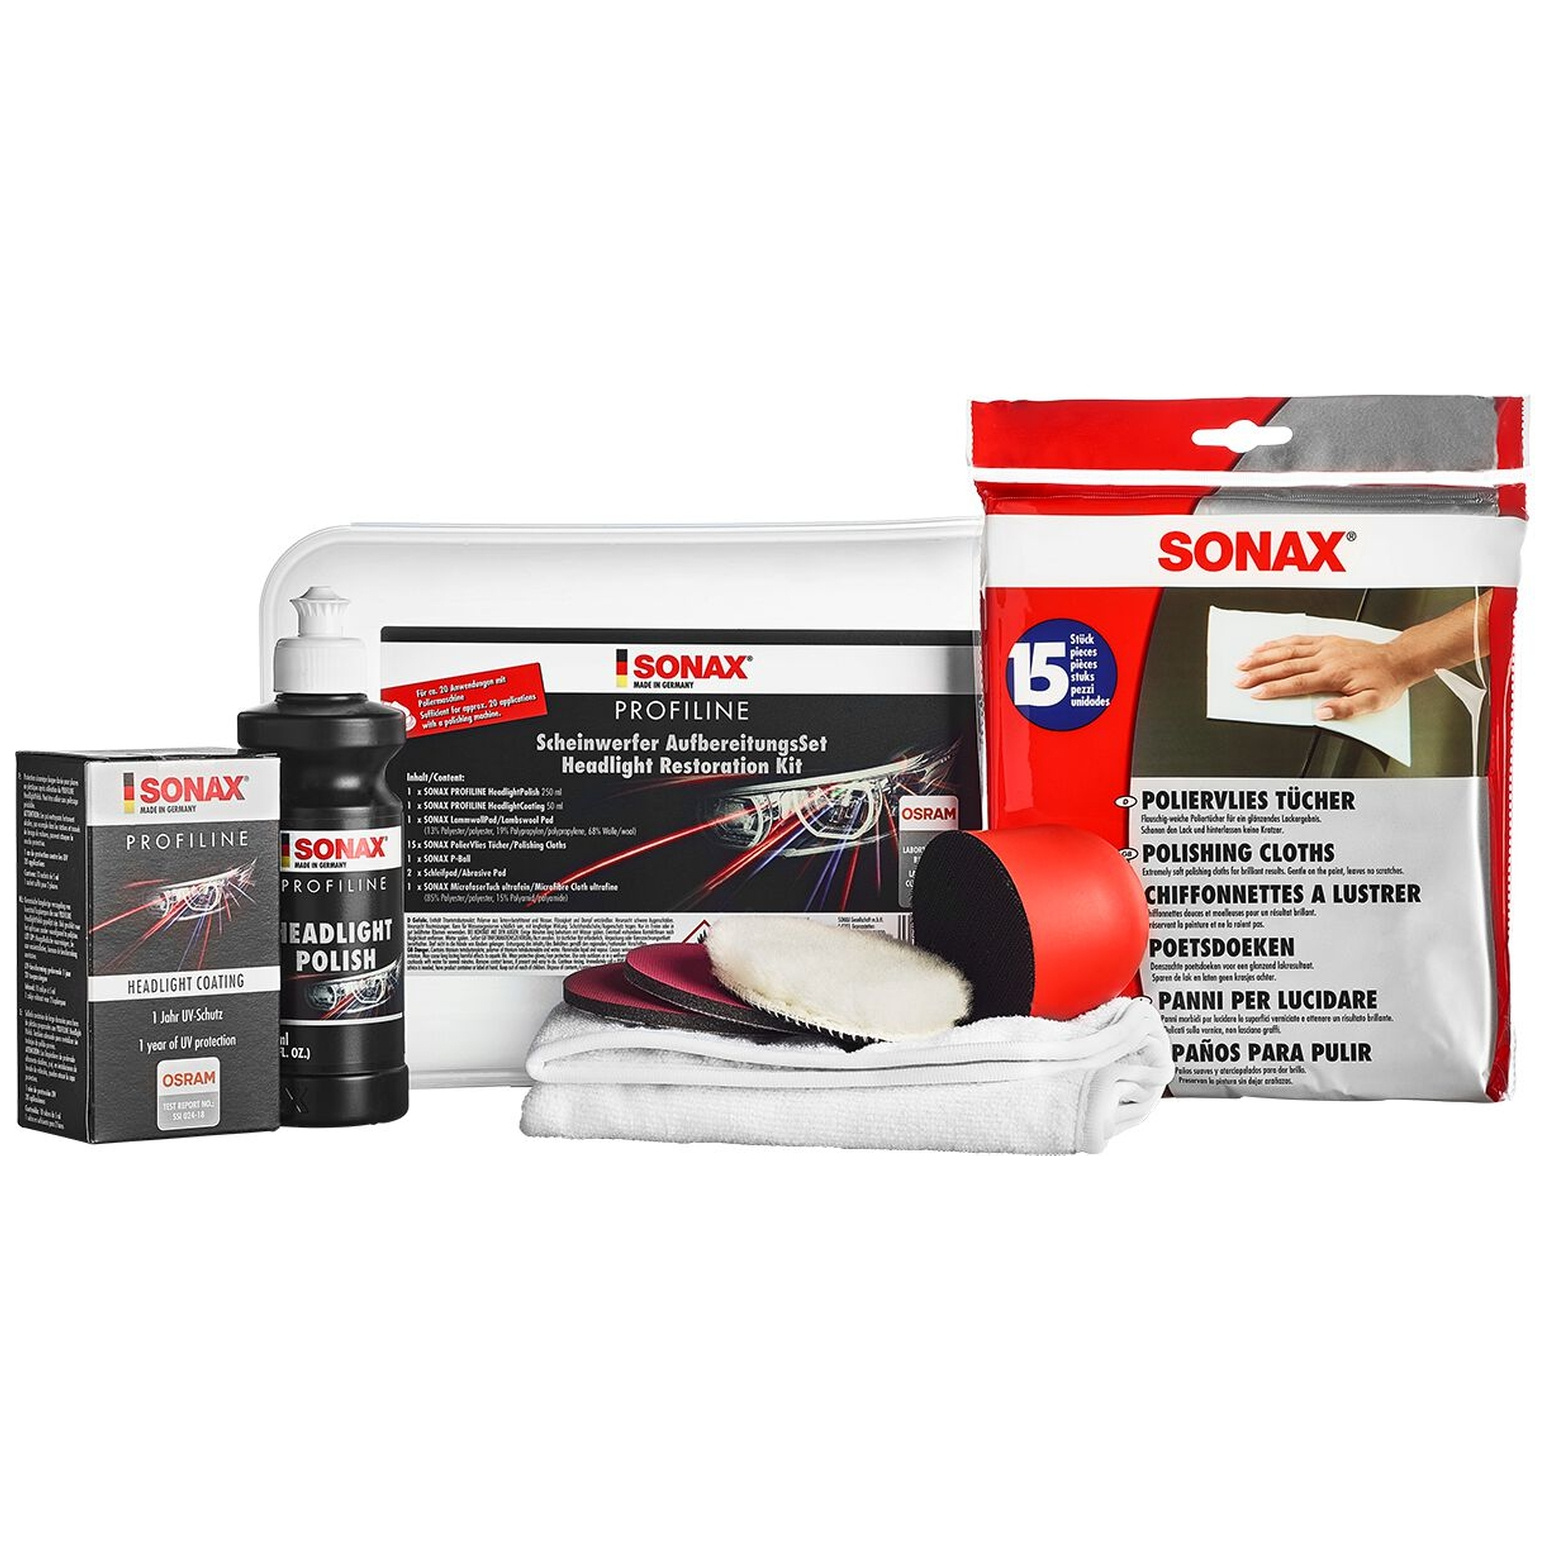 SONAX PROFILINE Scheinwerfer Aufbereitungsset - Car Care King